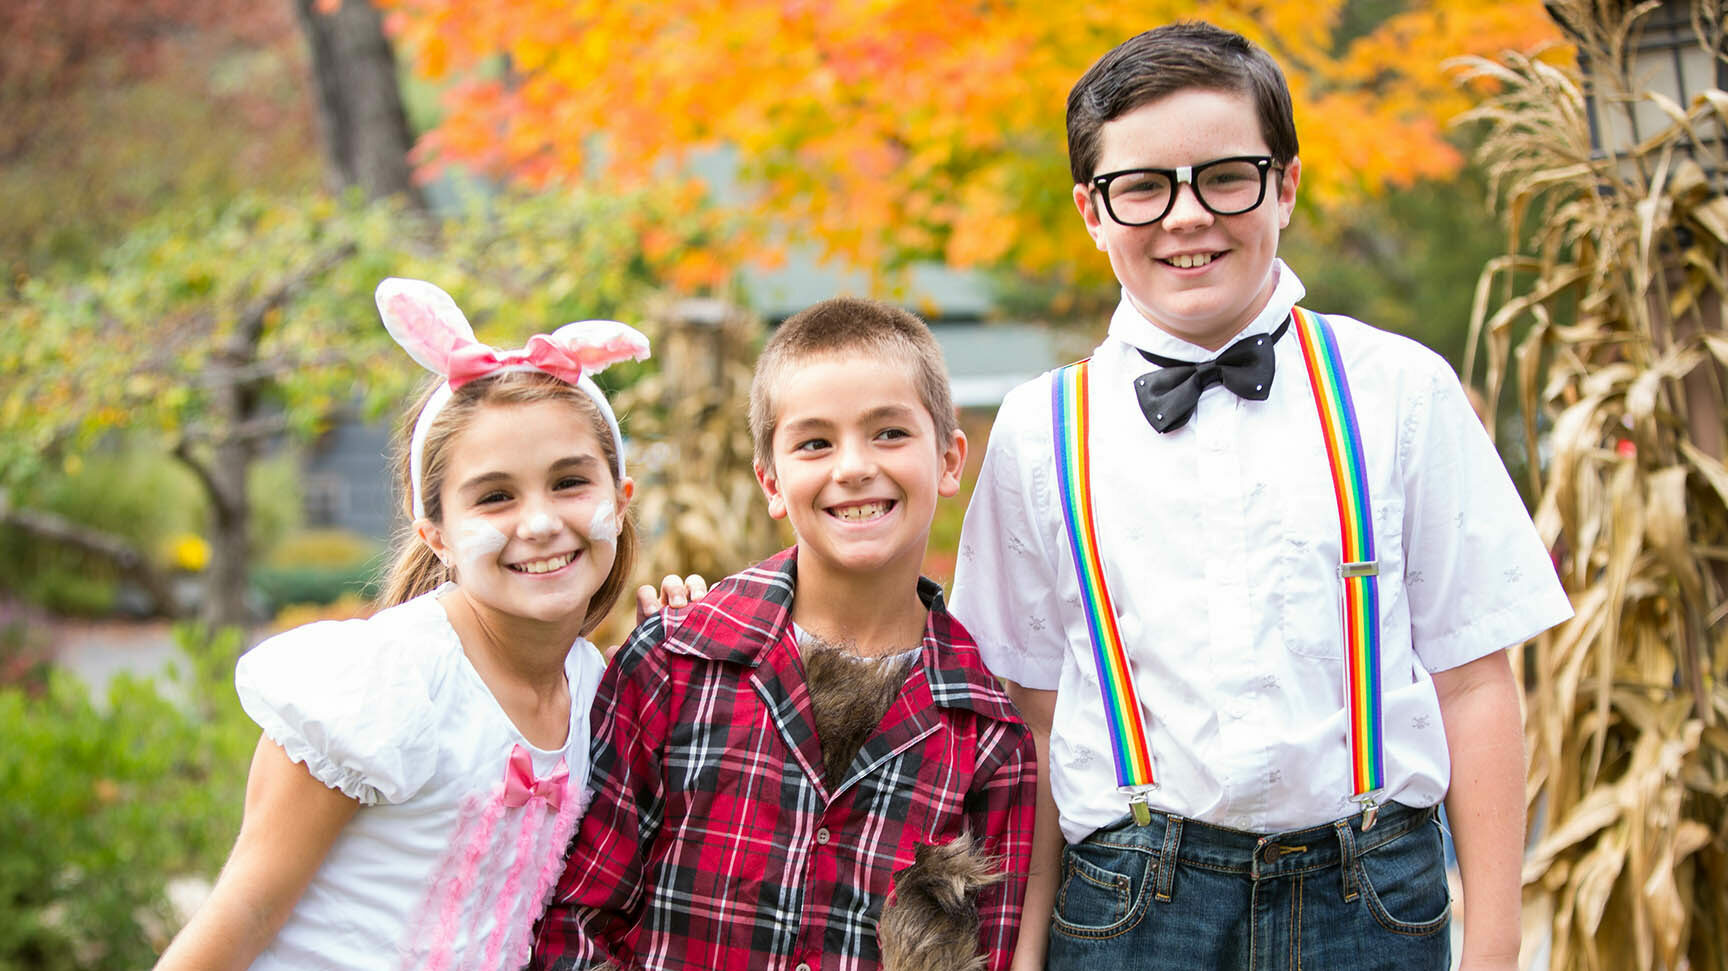 Kids in Halloween costumes.